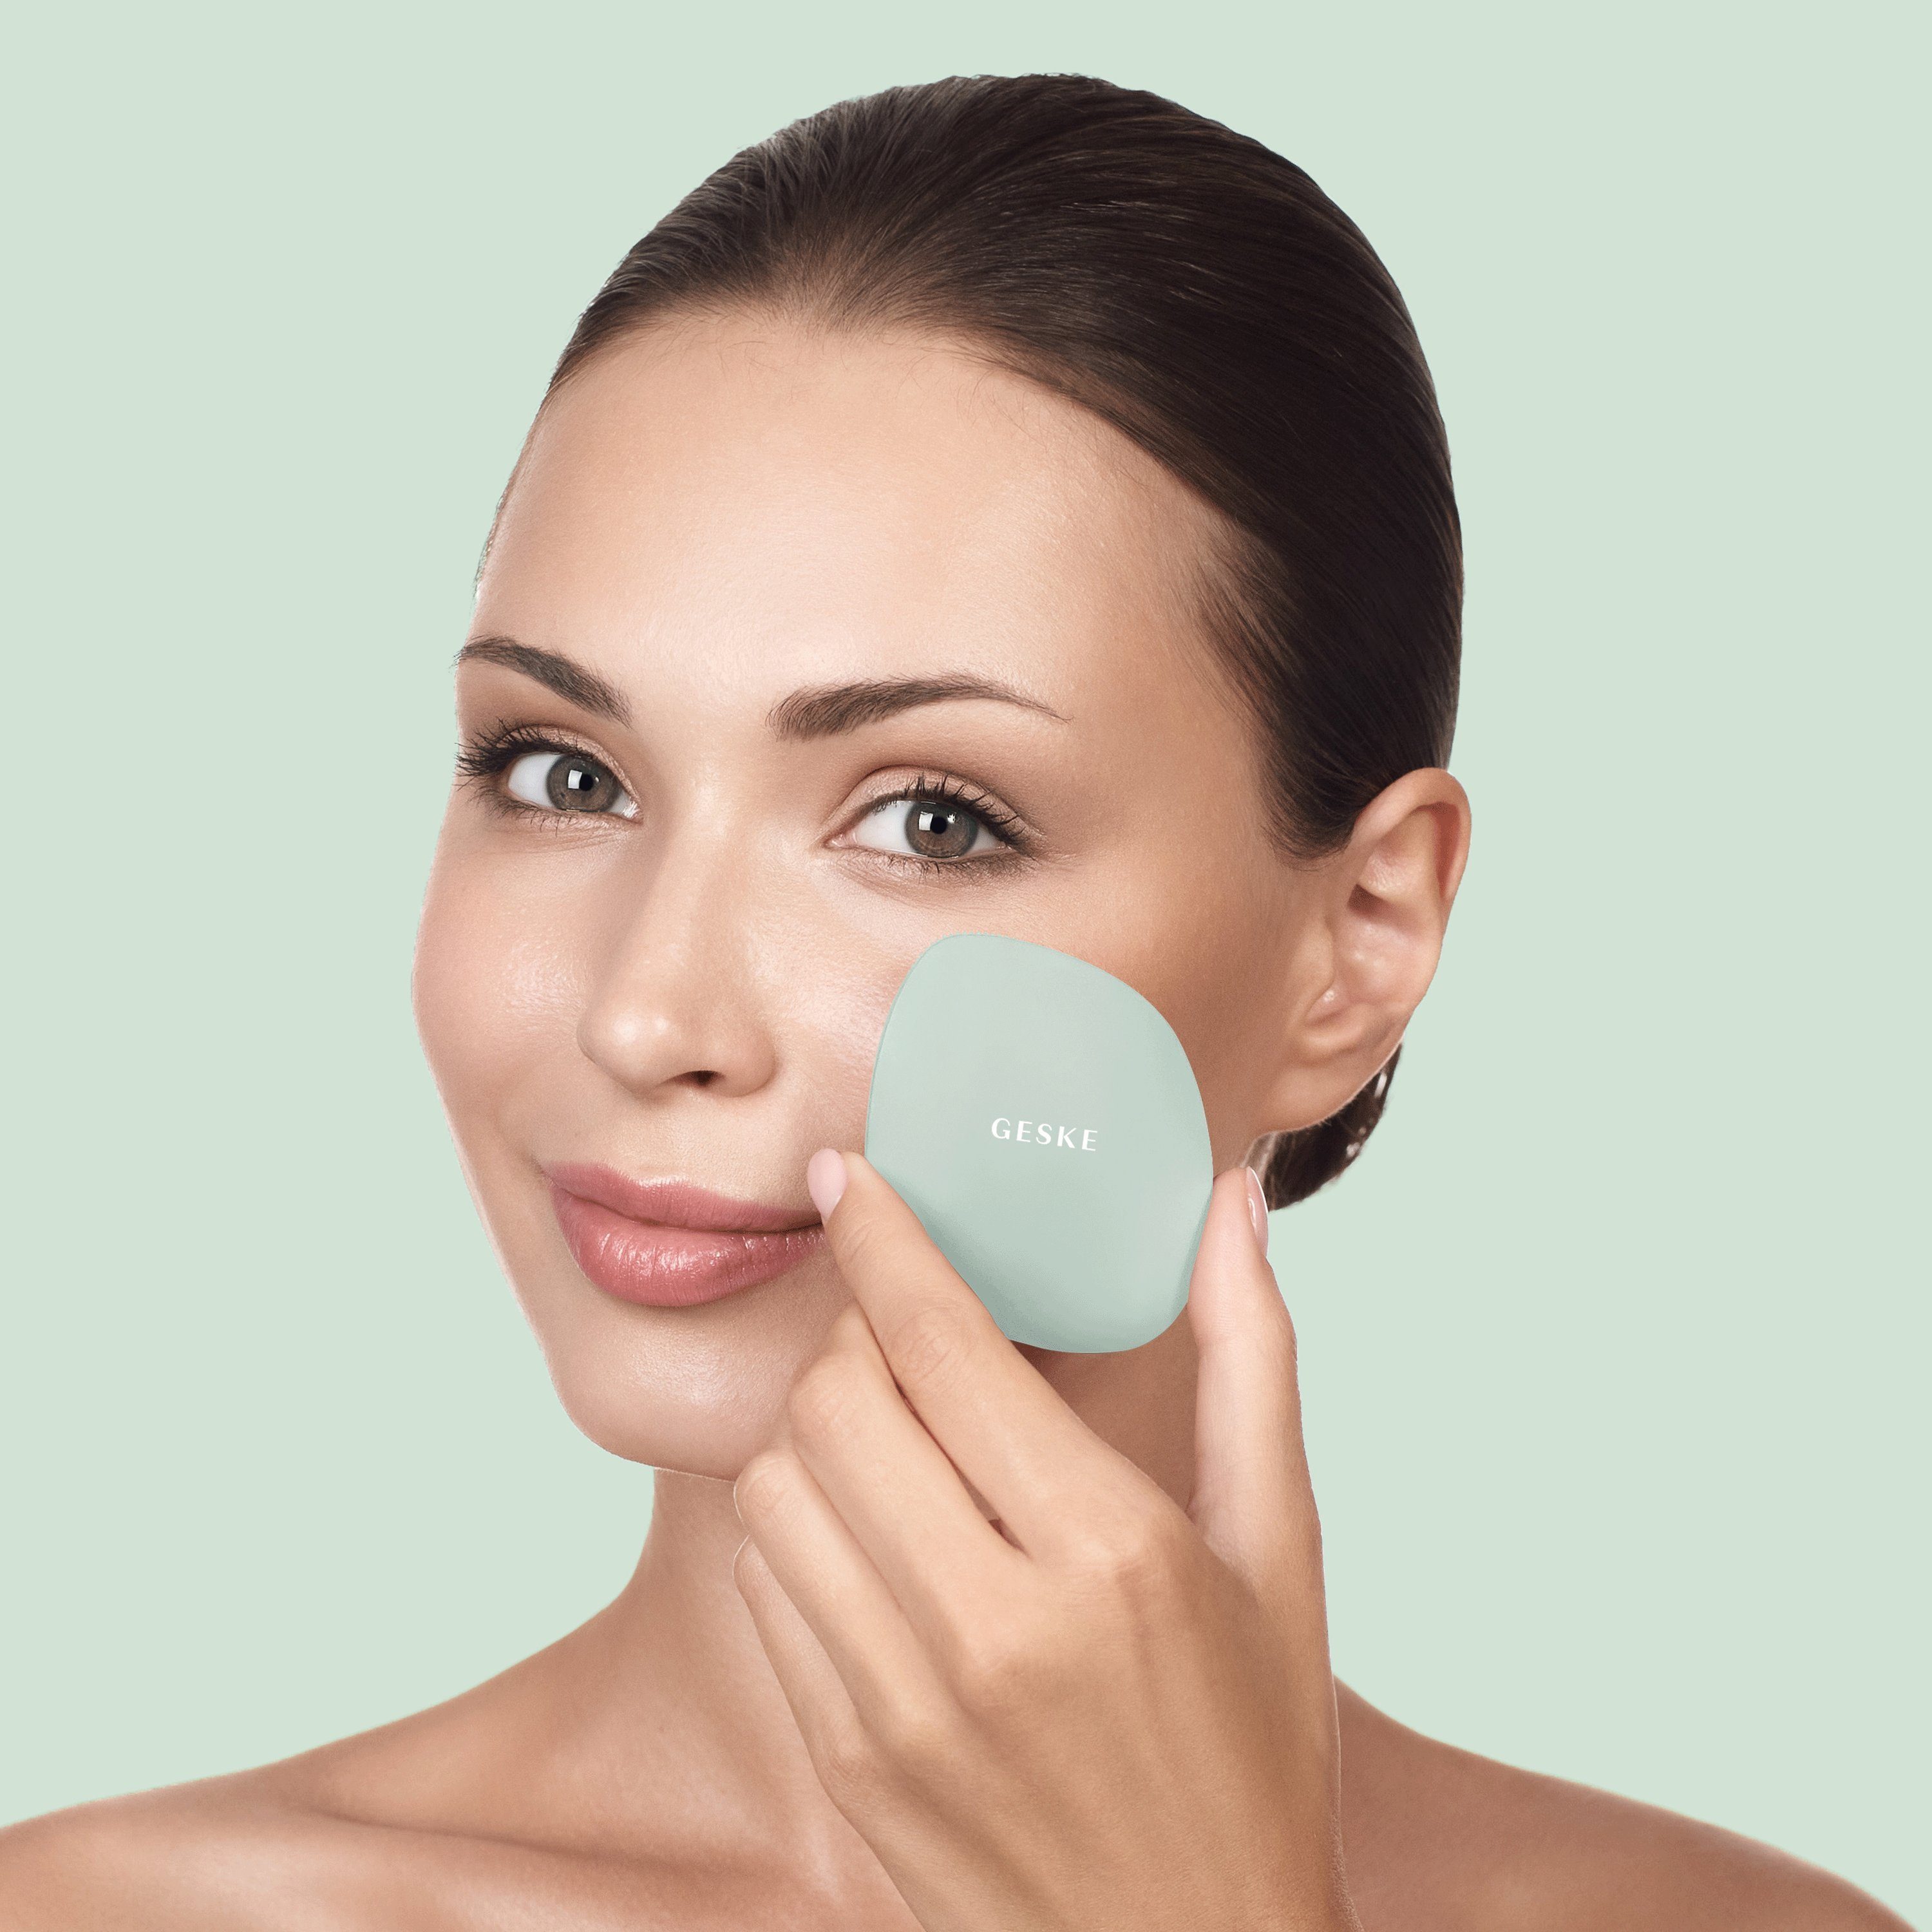 inkl. deine 1, Mit der Packung, in SmartAppGuided™ GESKE APP Device), Gesichtsreinigungsbürste Hautpflegeroutine. erhältst Du 1-tlg., App (SmartAppGuided Brush kostenloser German Facial Green personalisierte Elektrische Beauty GESKE Tech 4